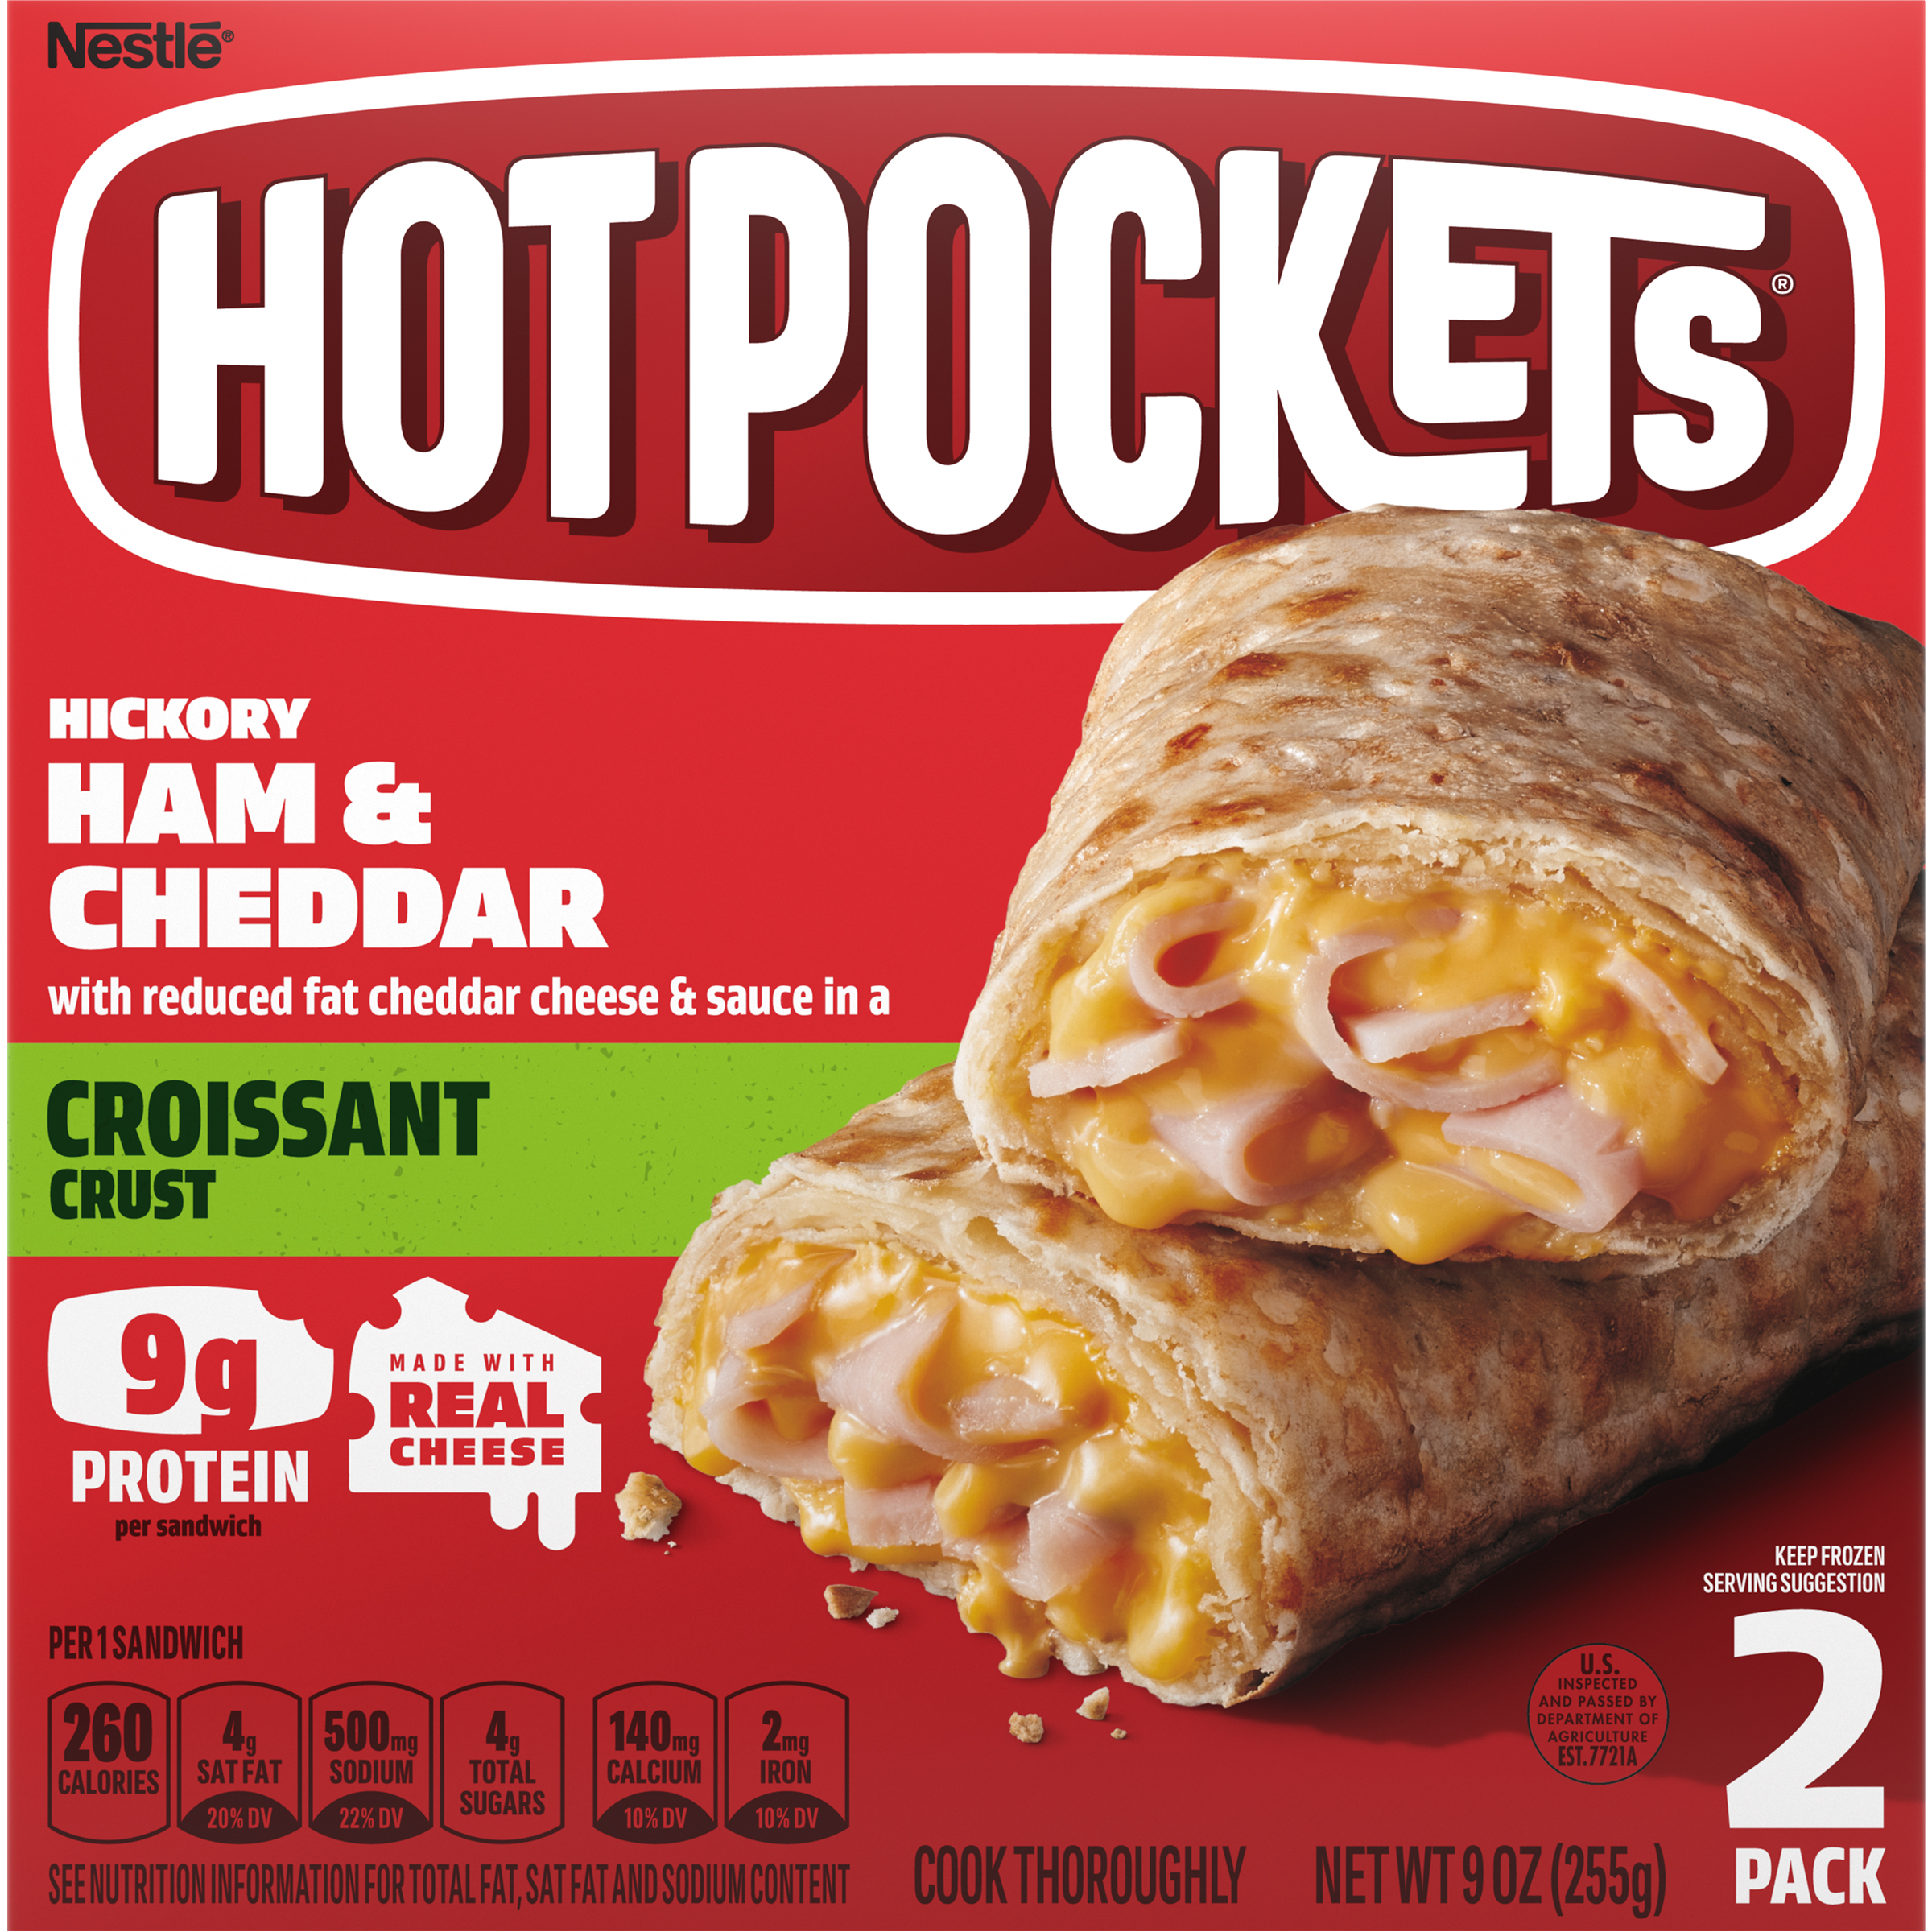 HOT POCKETS Croissant Crust Hickory Ham & Cheddar 8 units per case 9.0 oz